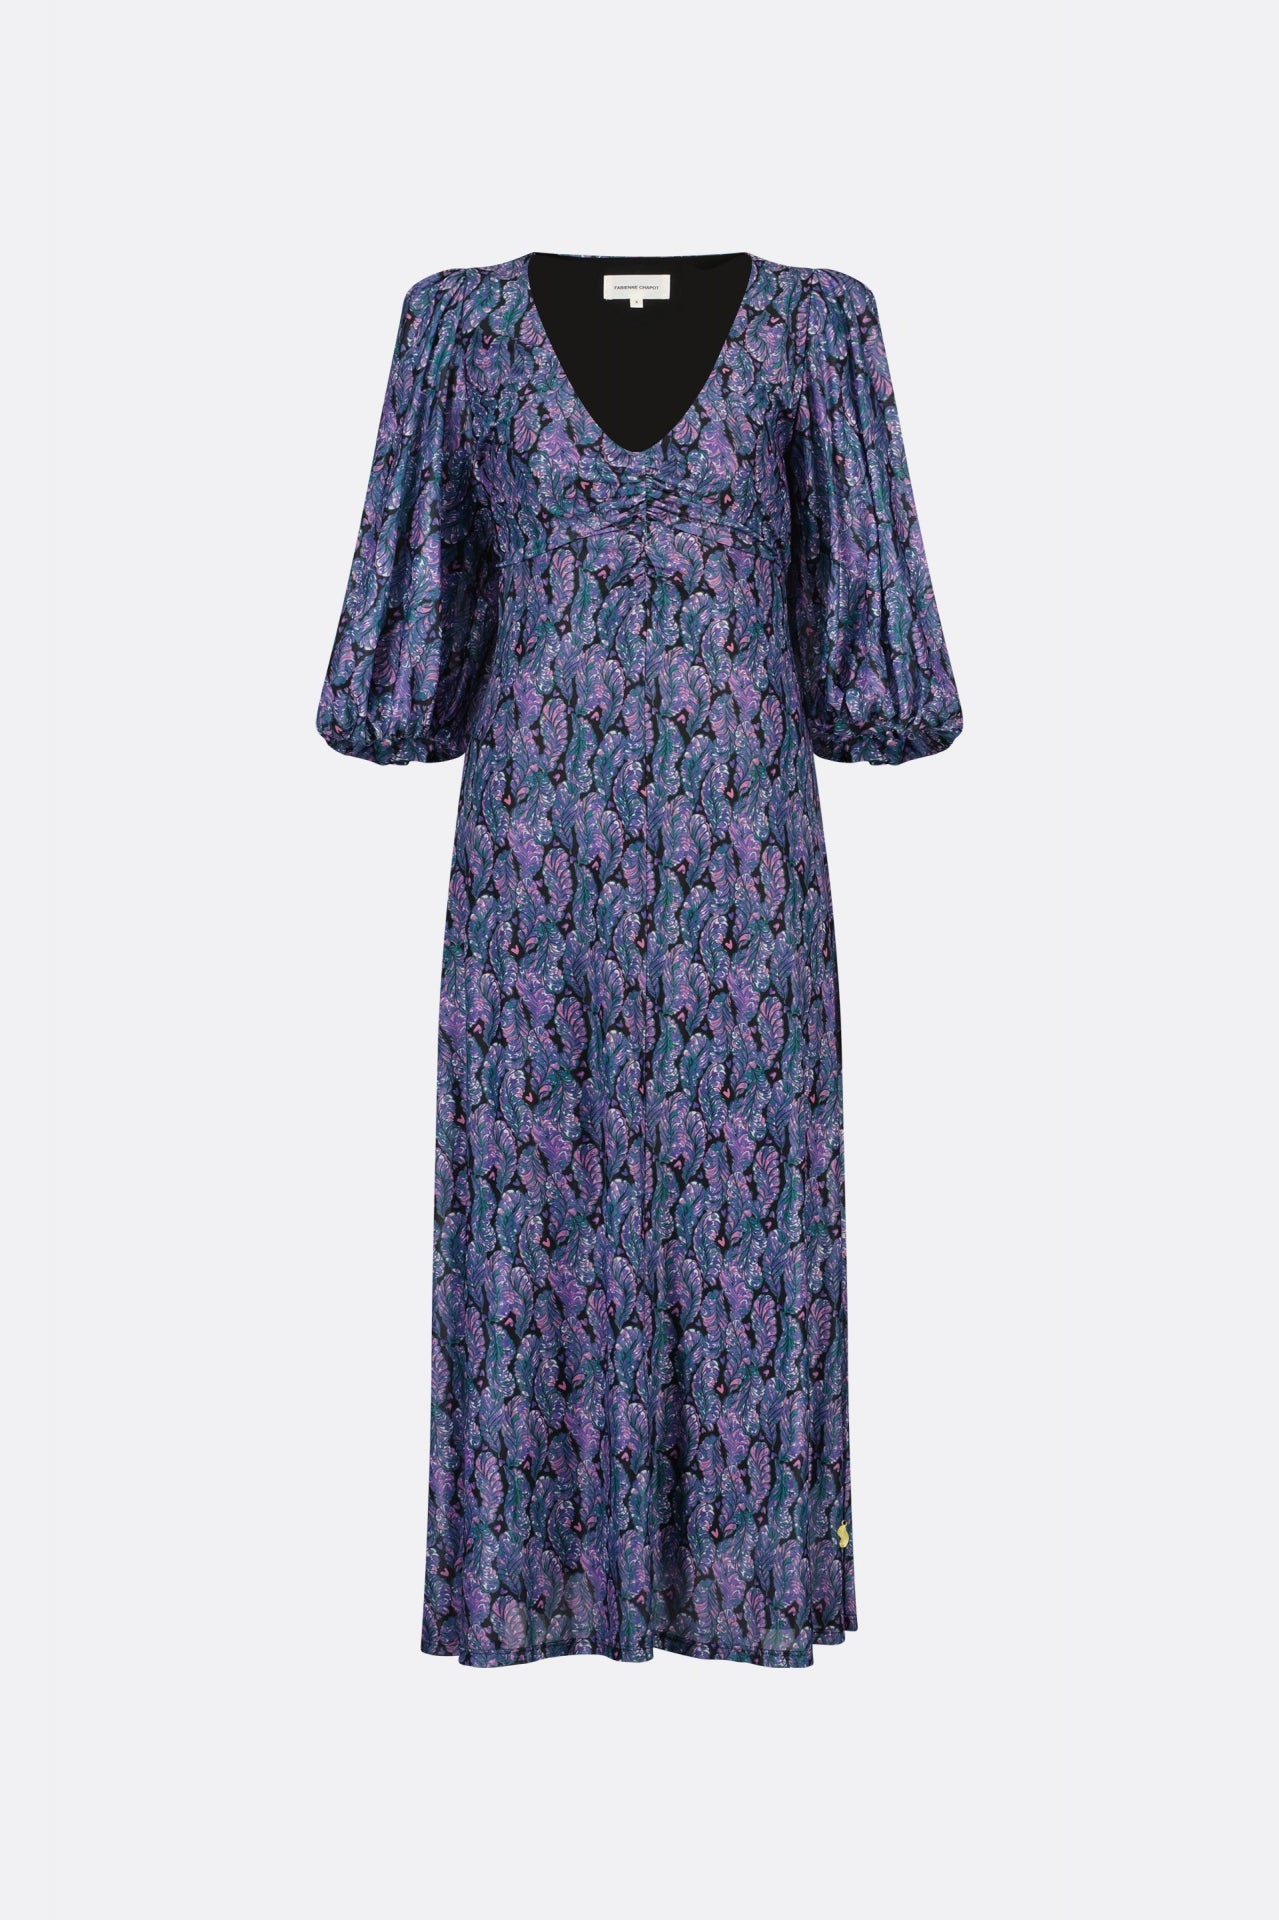 Welma Dress | Antra/Poppy Purple